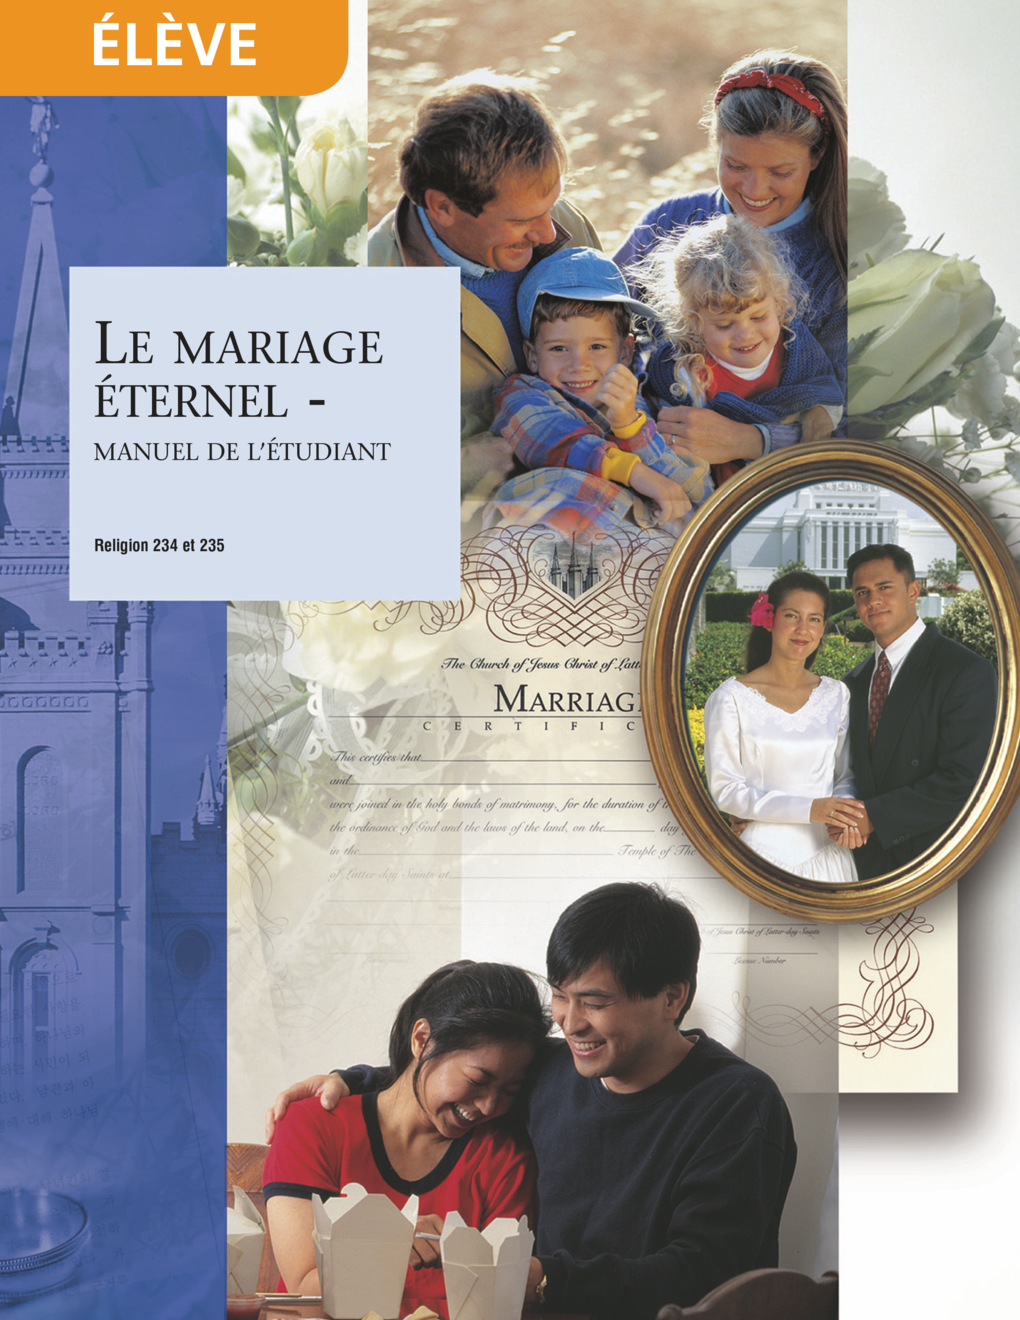 Préparation au mariage éternel, manuel de l’étudiant (Religion 234)